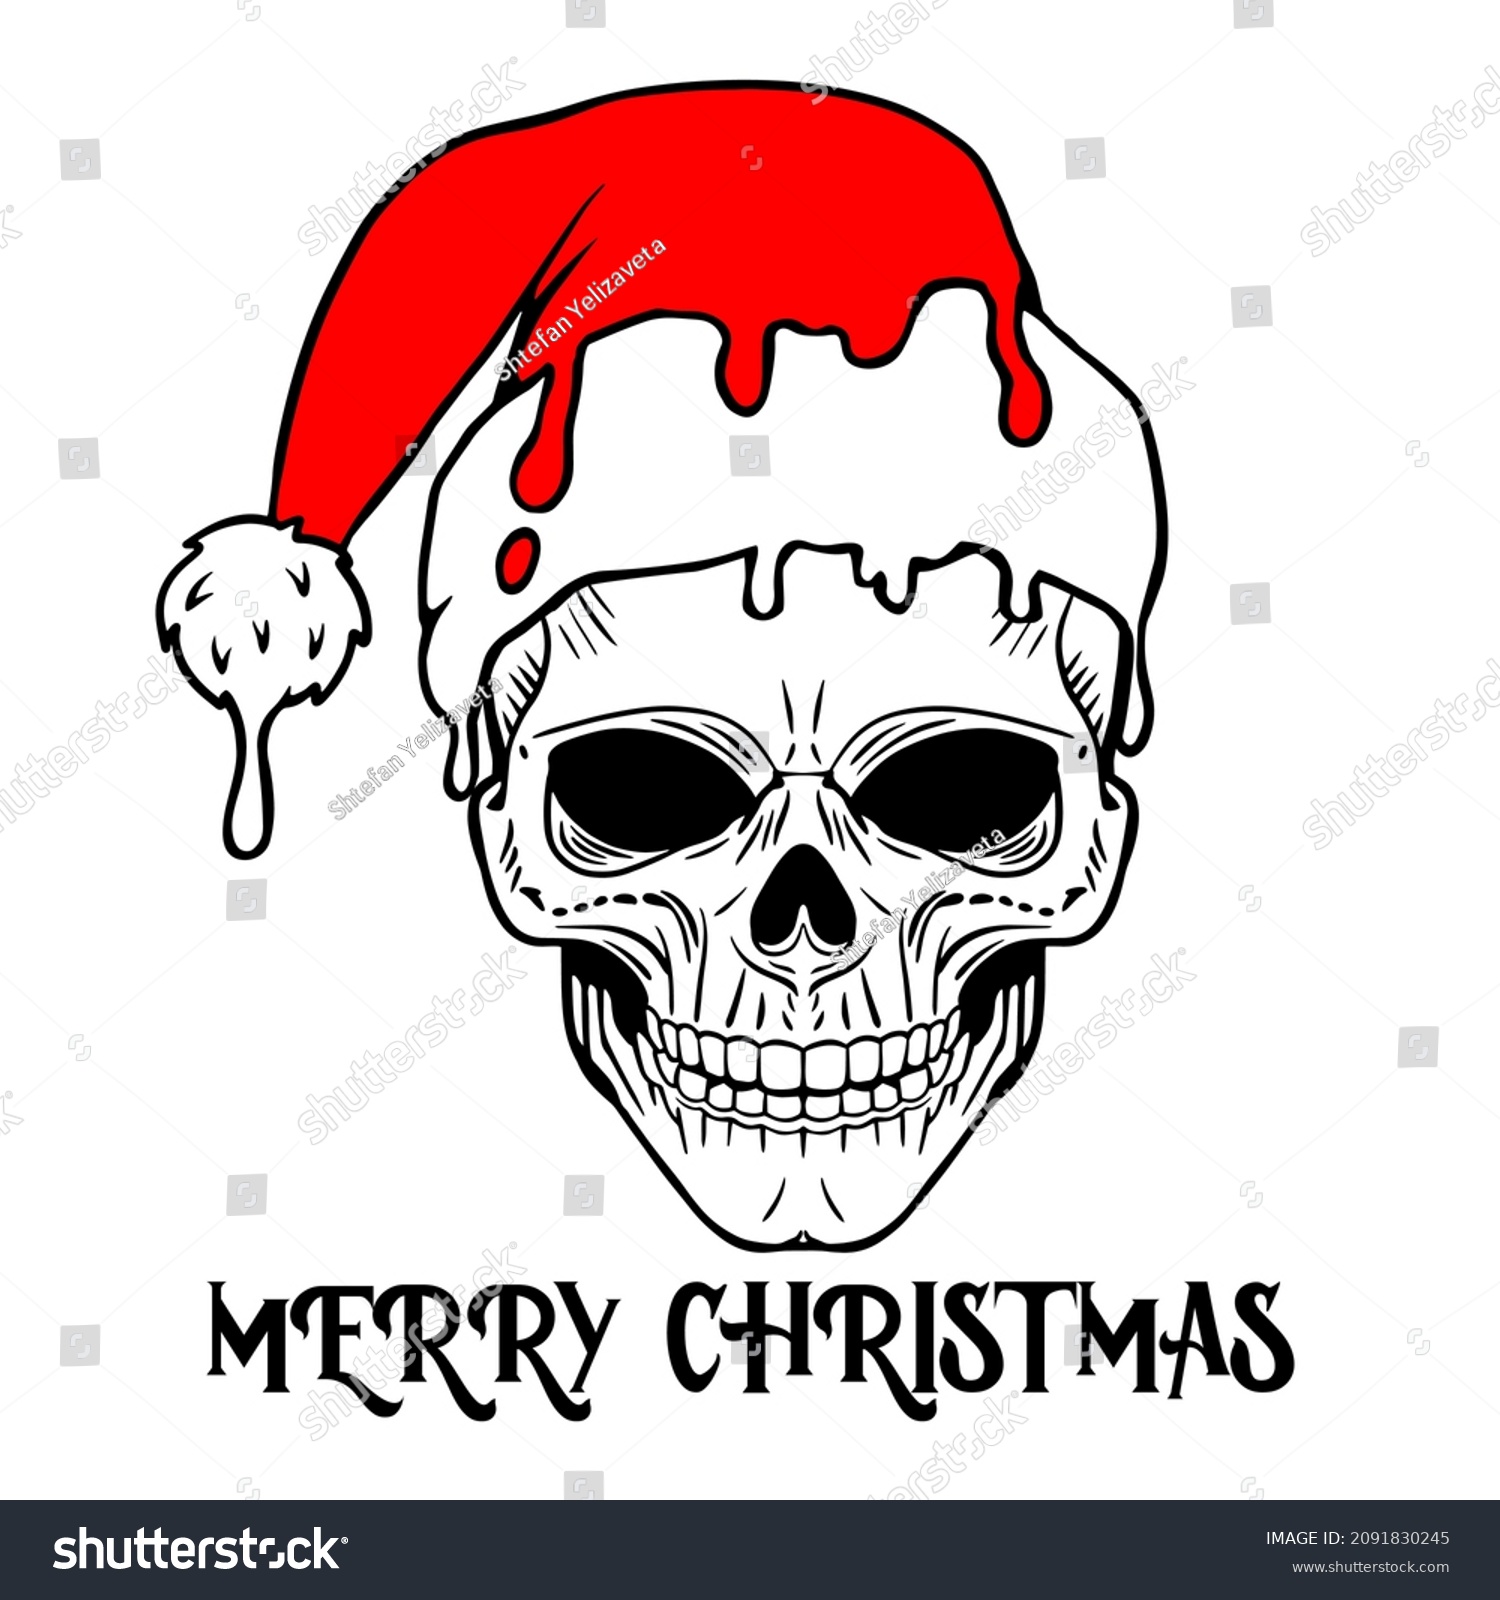 SVG of Vector Christmas skull illustration. Hand drawn skull in Santa hat. Inscription Merry Christmas. Print t shirt design. svg